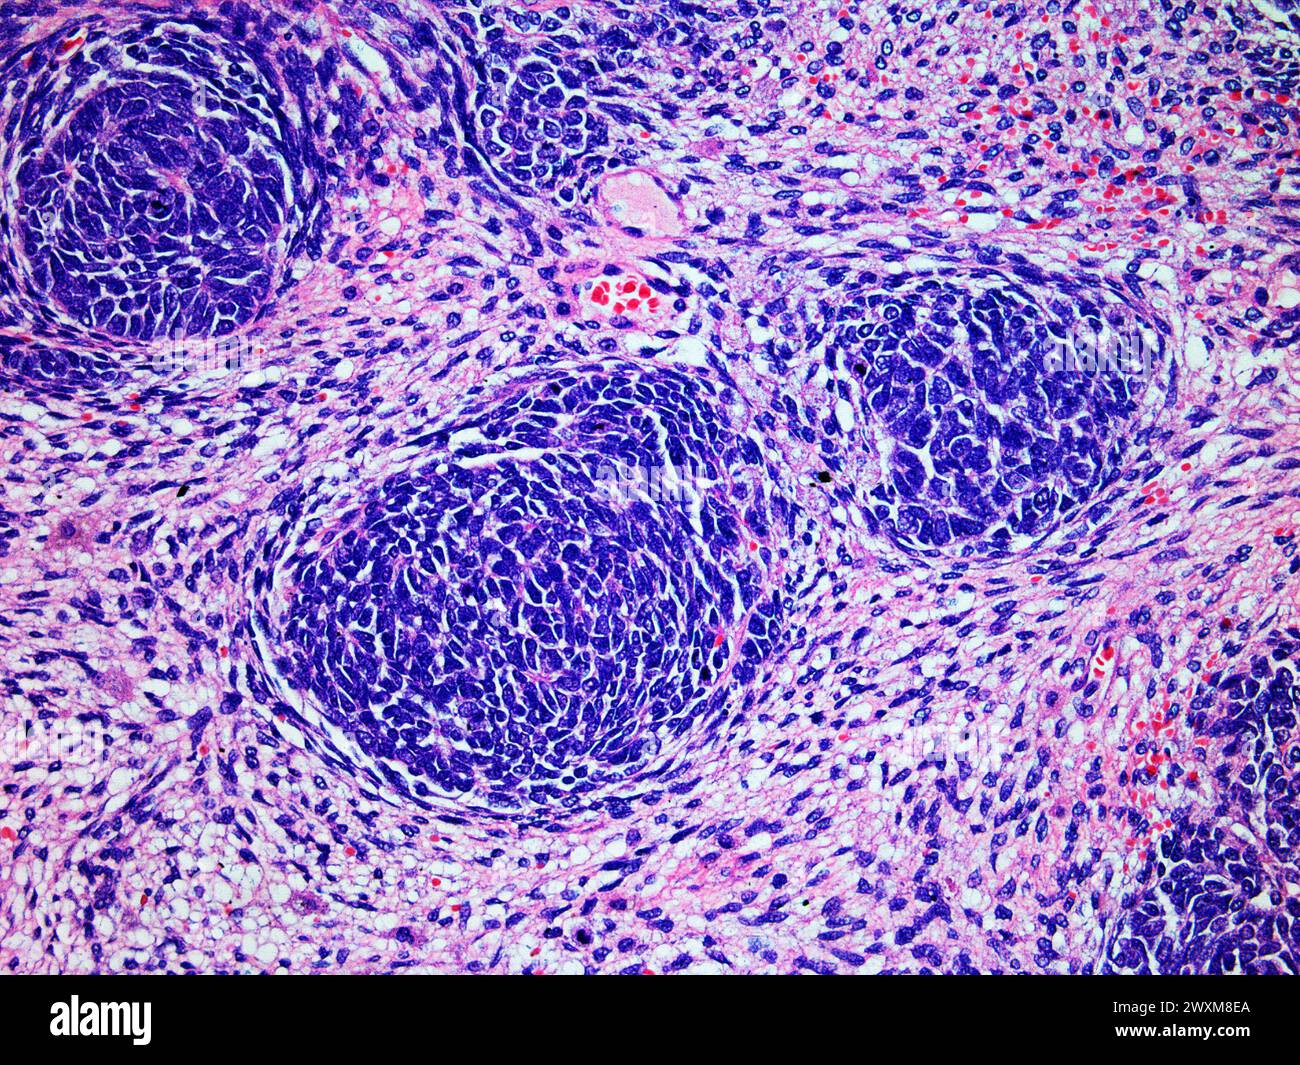 Mikroskopisches Bild eines Wilms-Tumors oder Nephroblastoms einer Kinderniere bei 200-facher Vergrößerung mit Hämatoxylin- und Eosin-Färbung eines der Mo Stockfoto